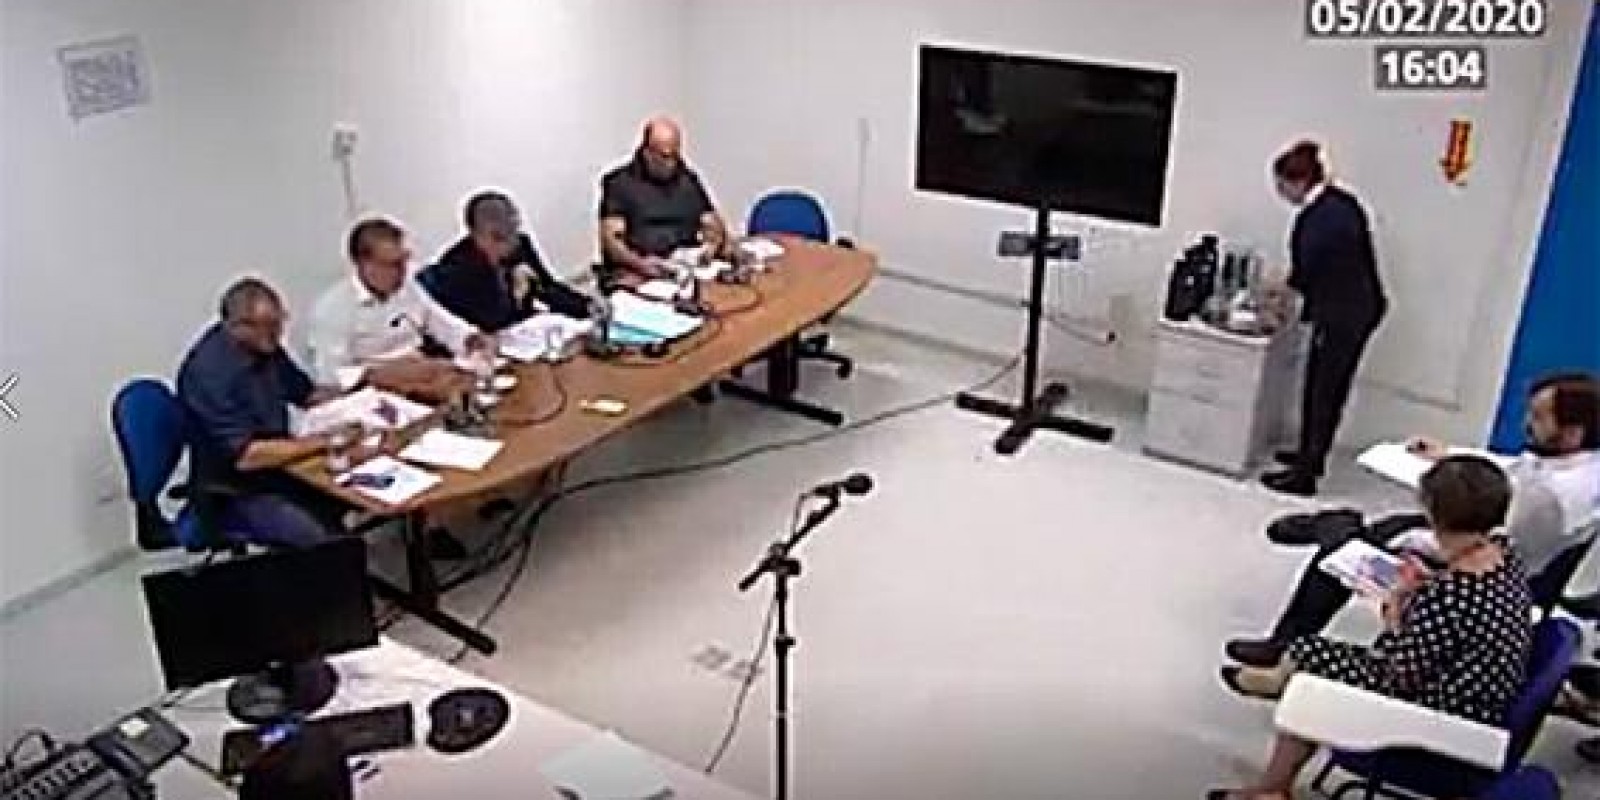 Câmara de Vereadores de Joinville aprova projeto impopular em três minutos